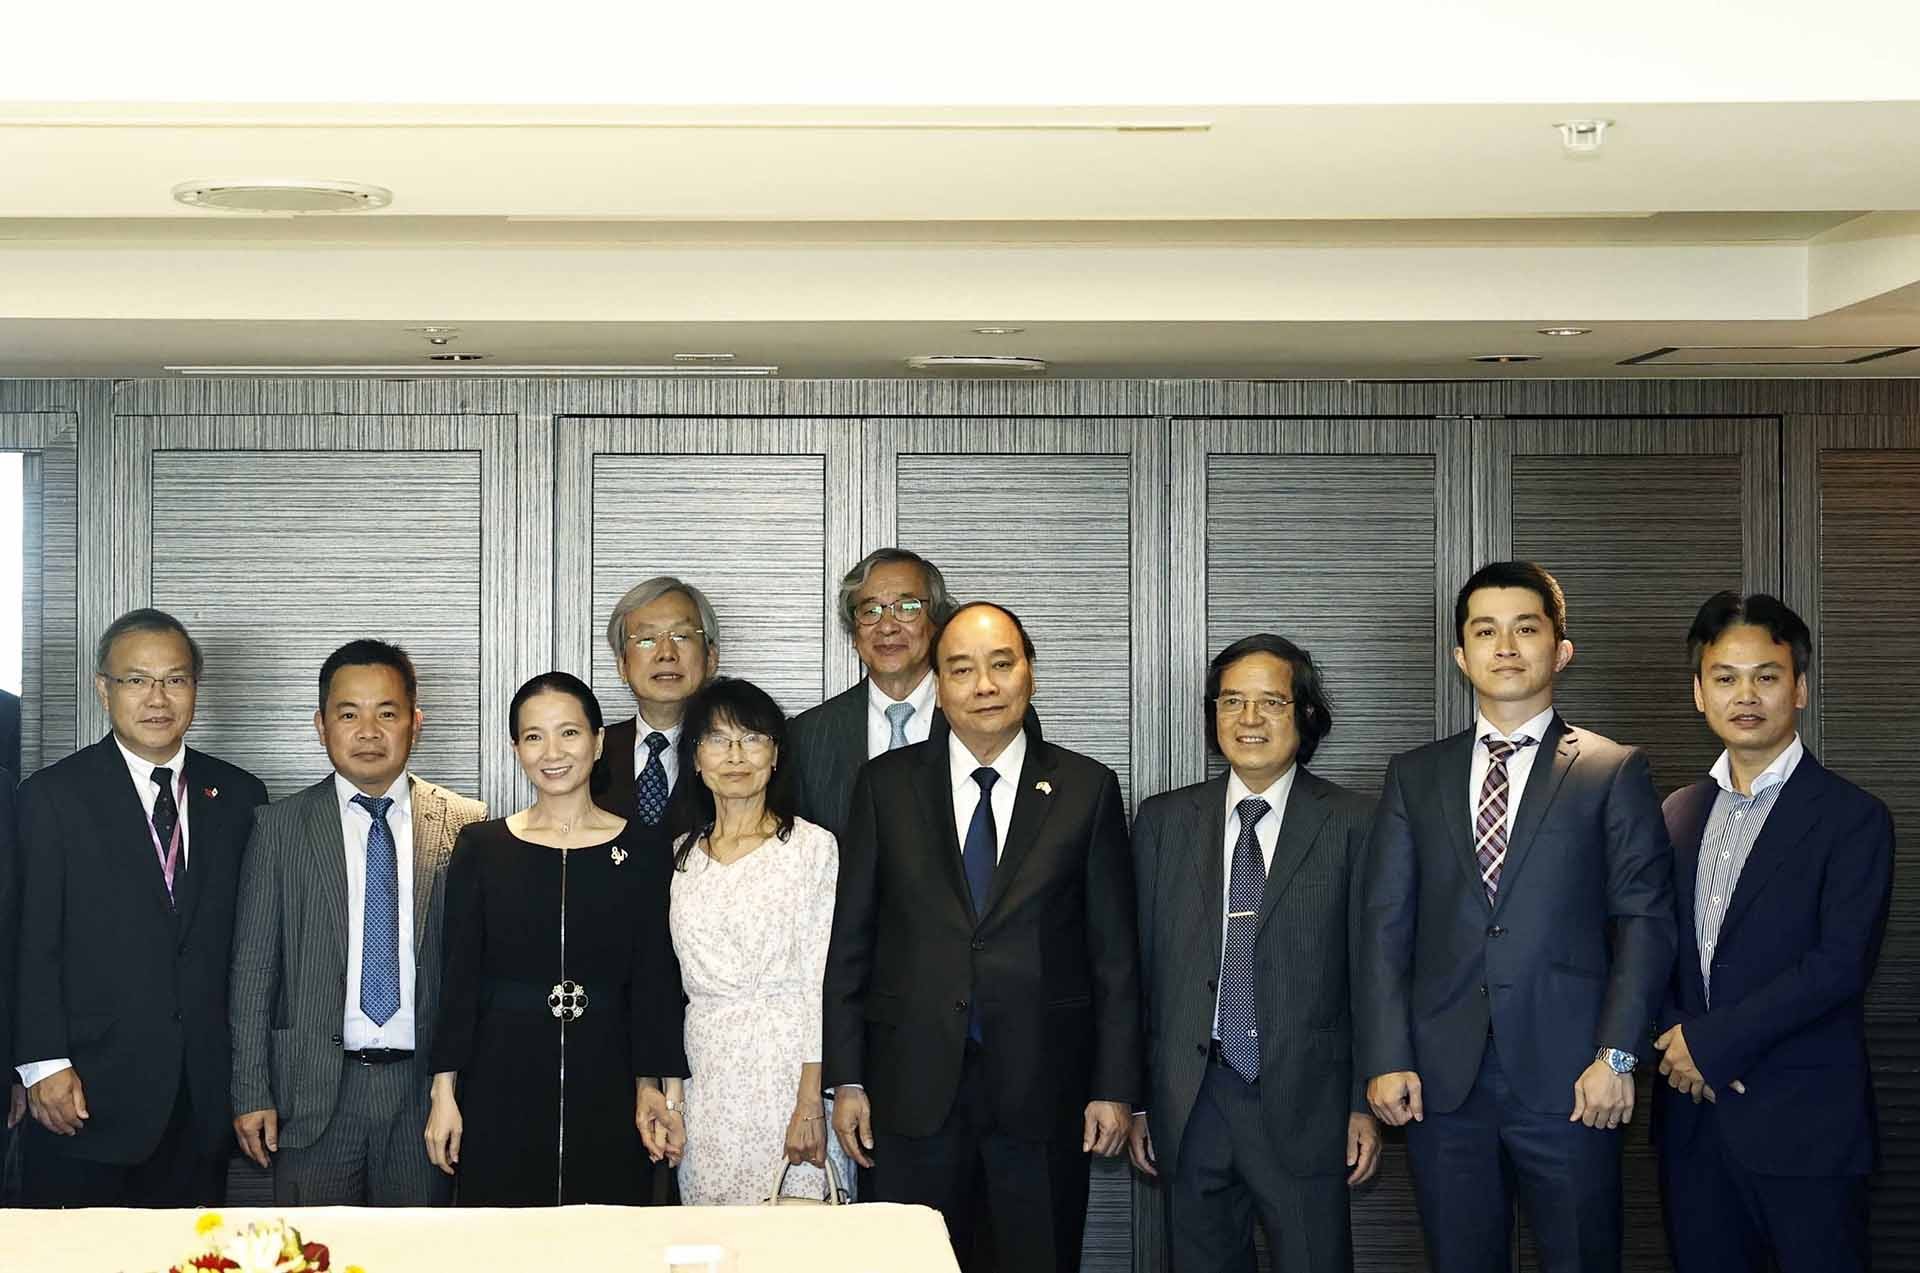 Hoạt động của Chủ tịch nước Nguyễn Xuân Phúc tại Nhật Bản